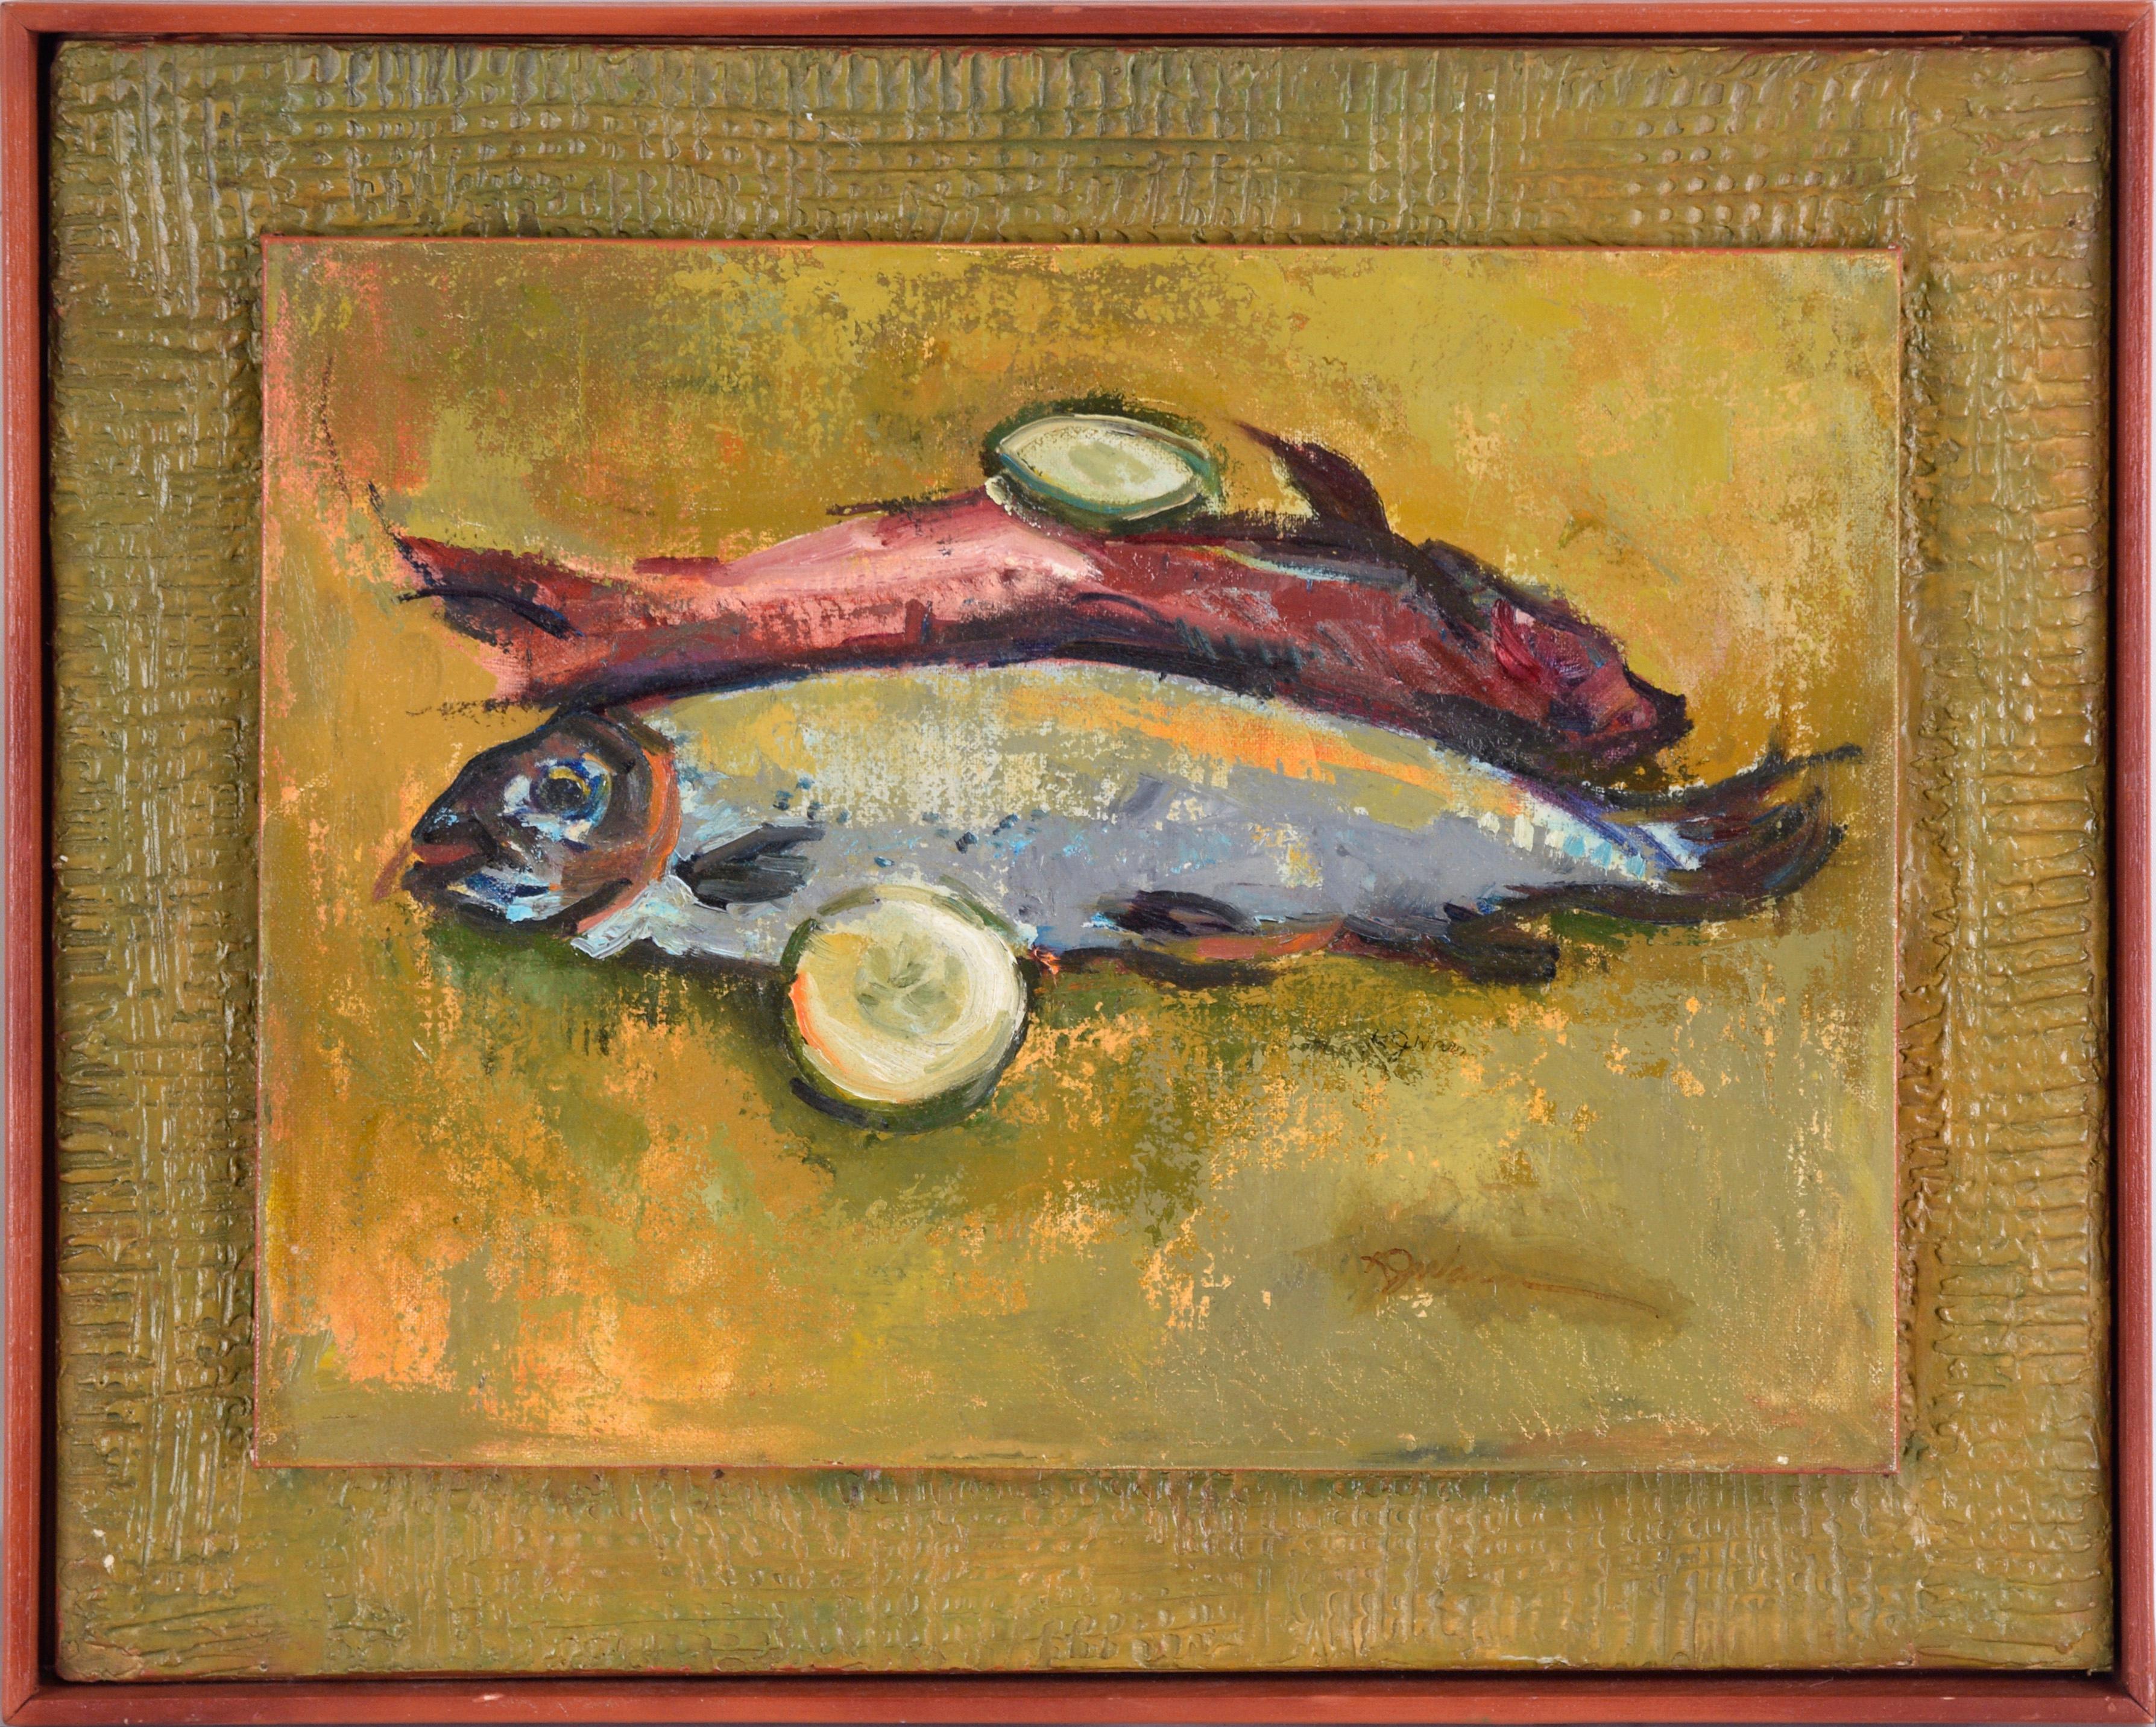 Zwei gebackene Fische mit Granat – Stillleben in Öl auf Künstlerkarton